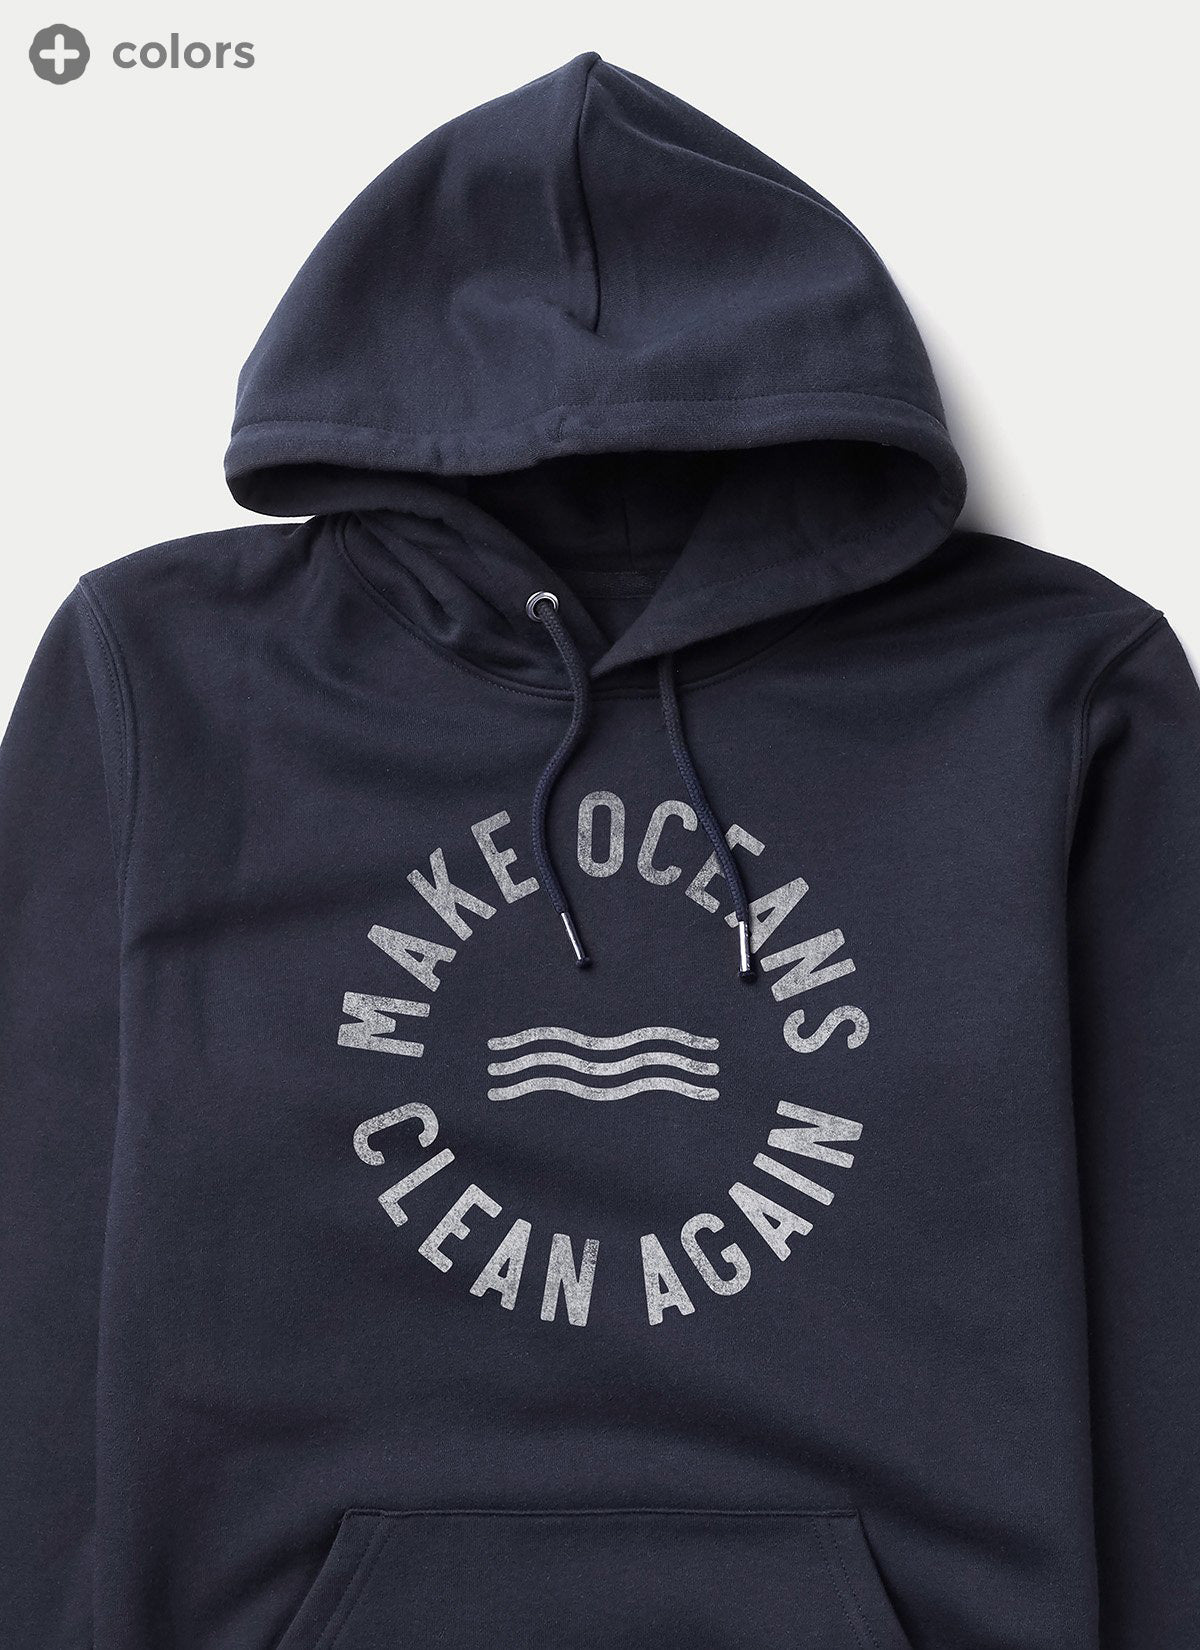 Hoodie "Make Oceans Clean Again"